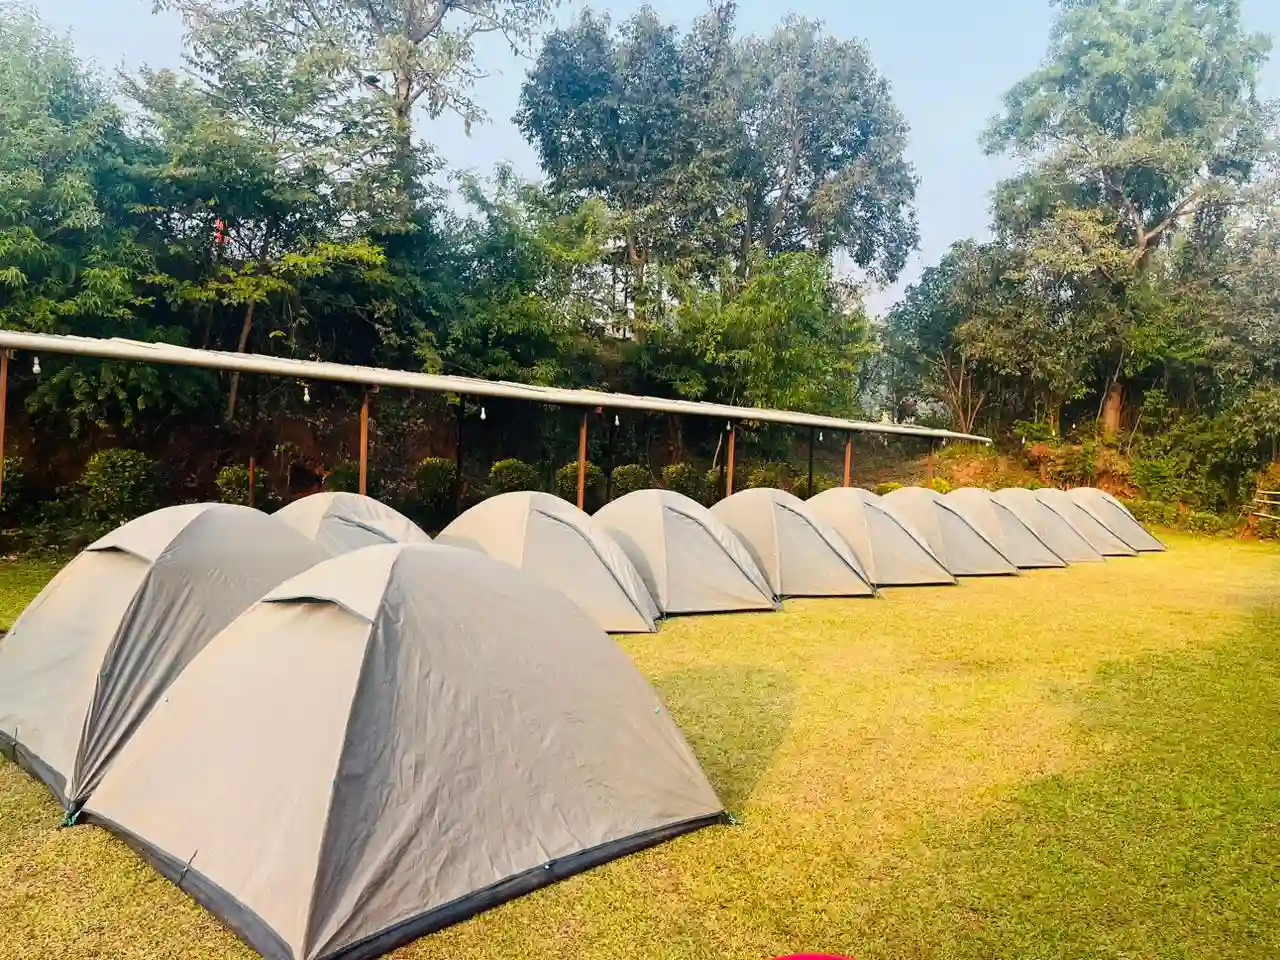 Systamatic camping at pawna